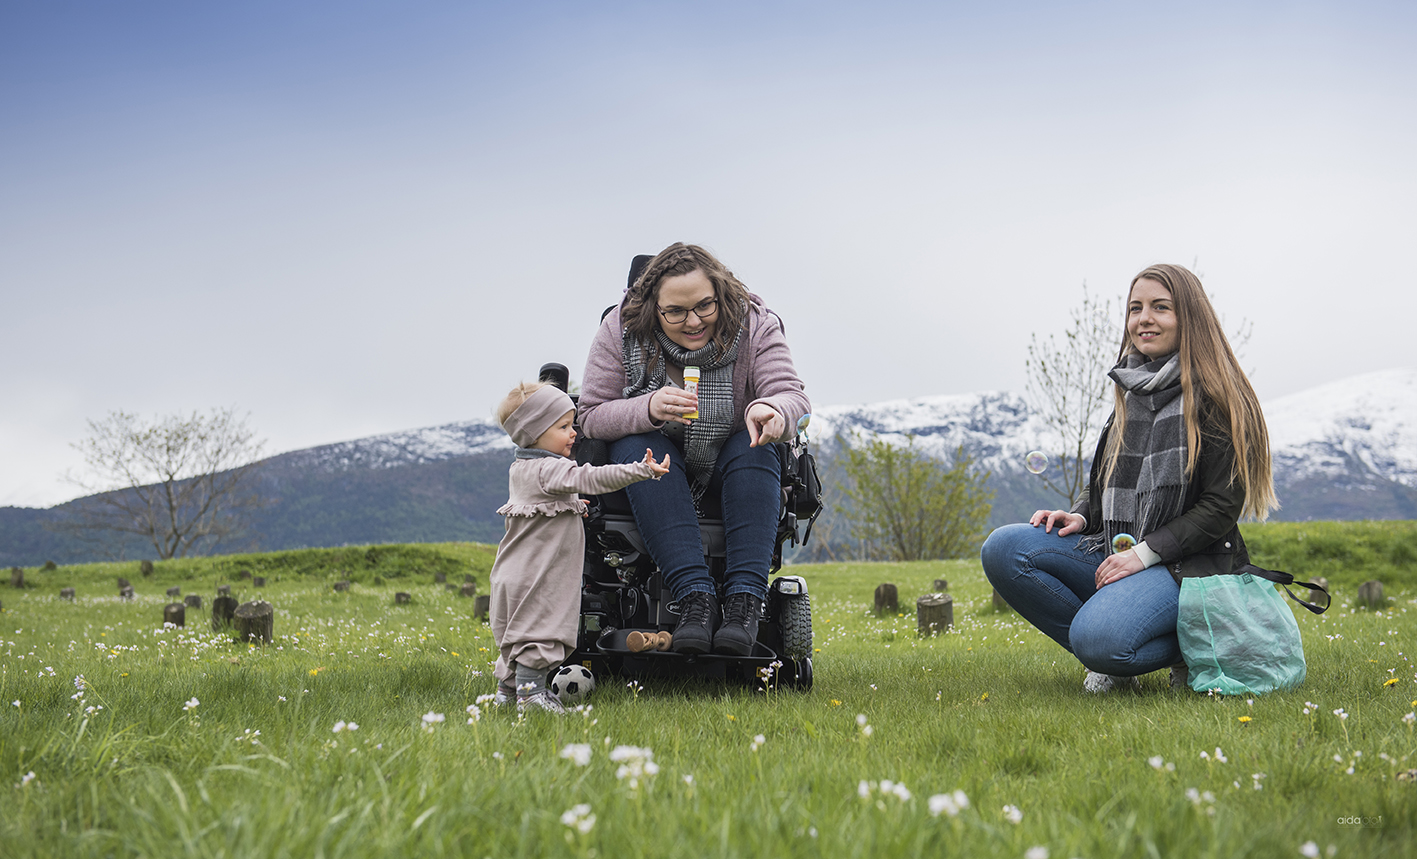 Kvinne i rullestol sammen med det lille jentebarnet sitt på grønt gress og bed fjell i bakgrunnen. Kvinnen peker på noe. Kvinnelig assistent sitter ved siden av og smiler.